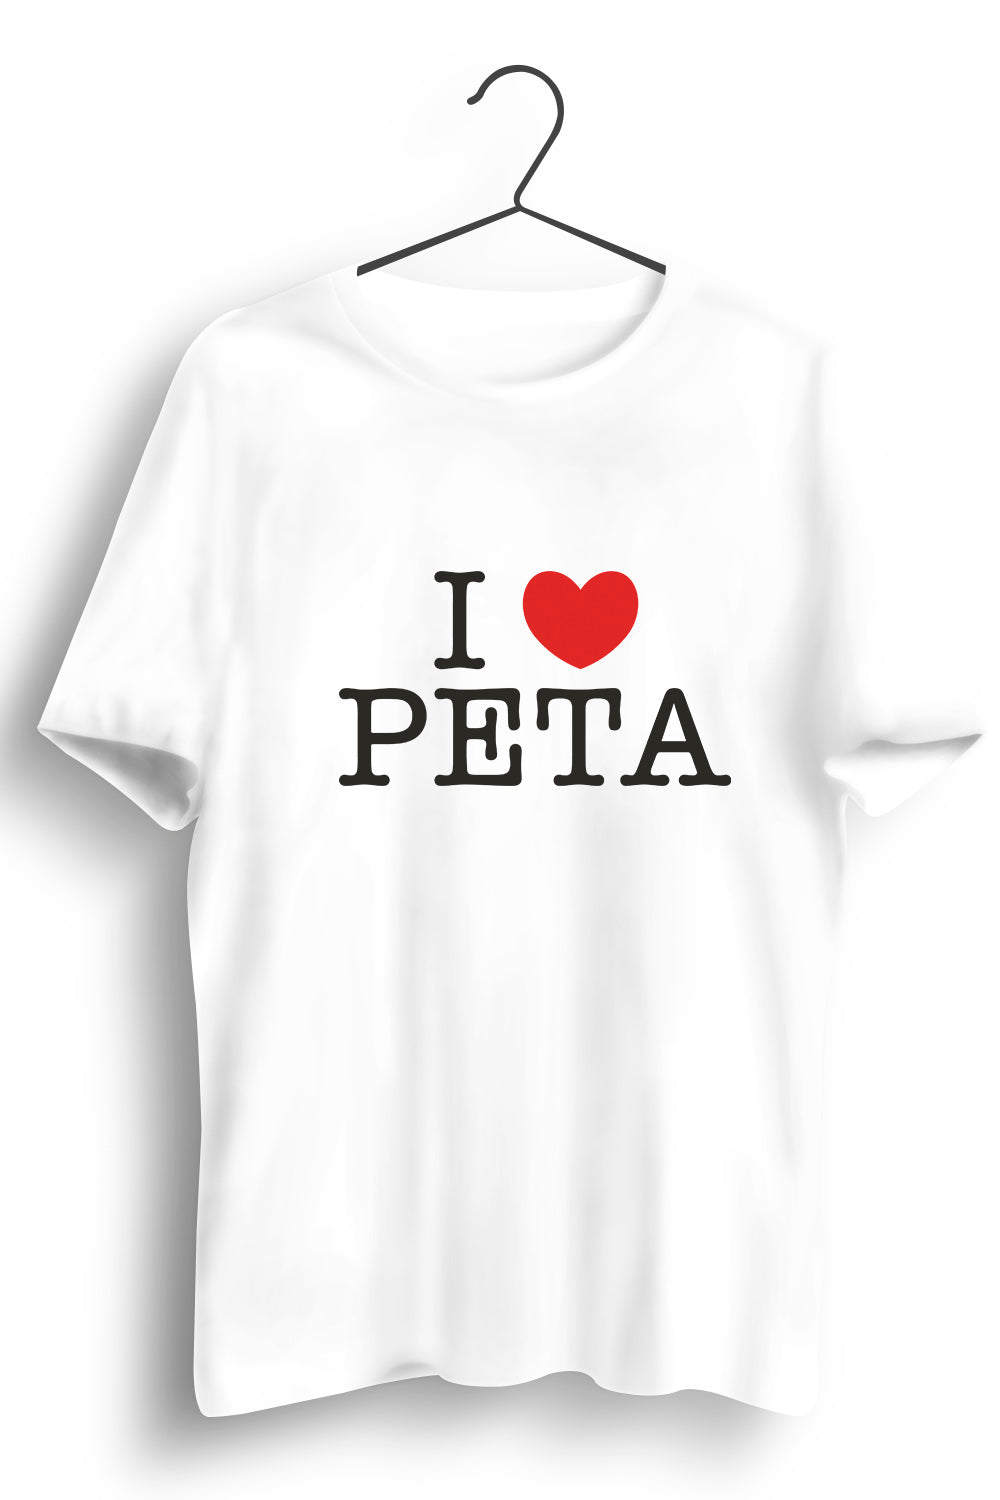 I Love Peta White Tshirt